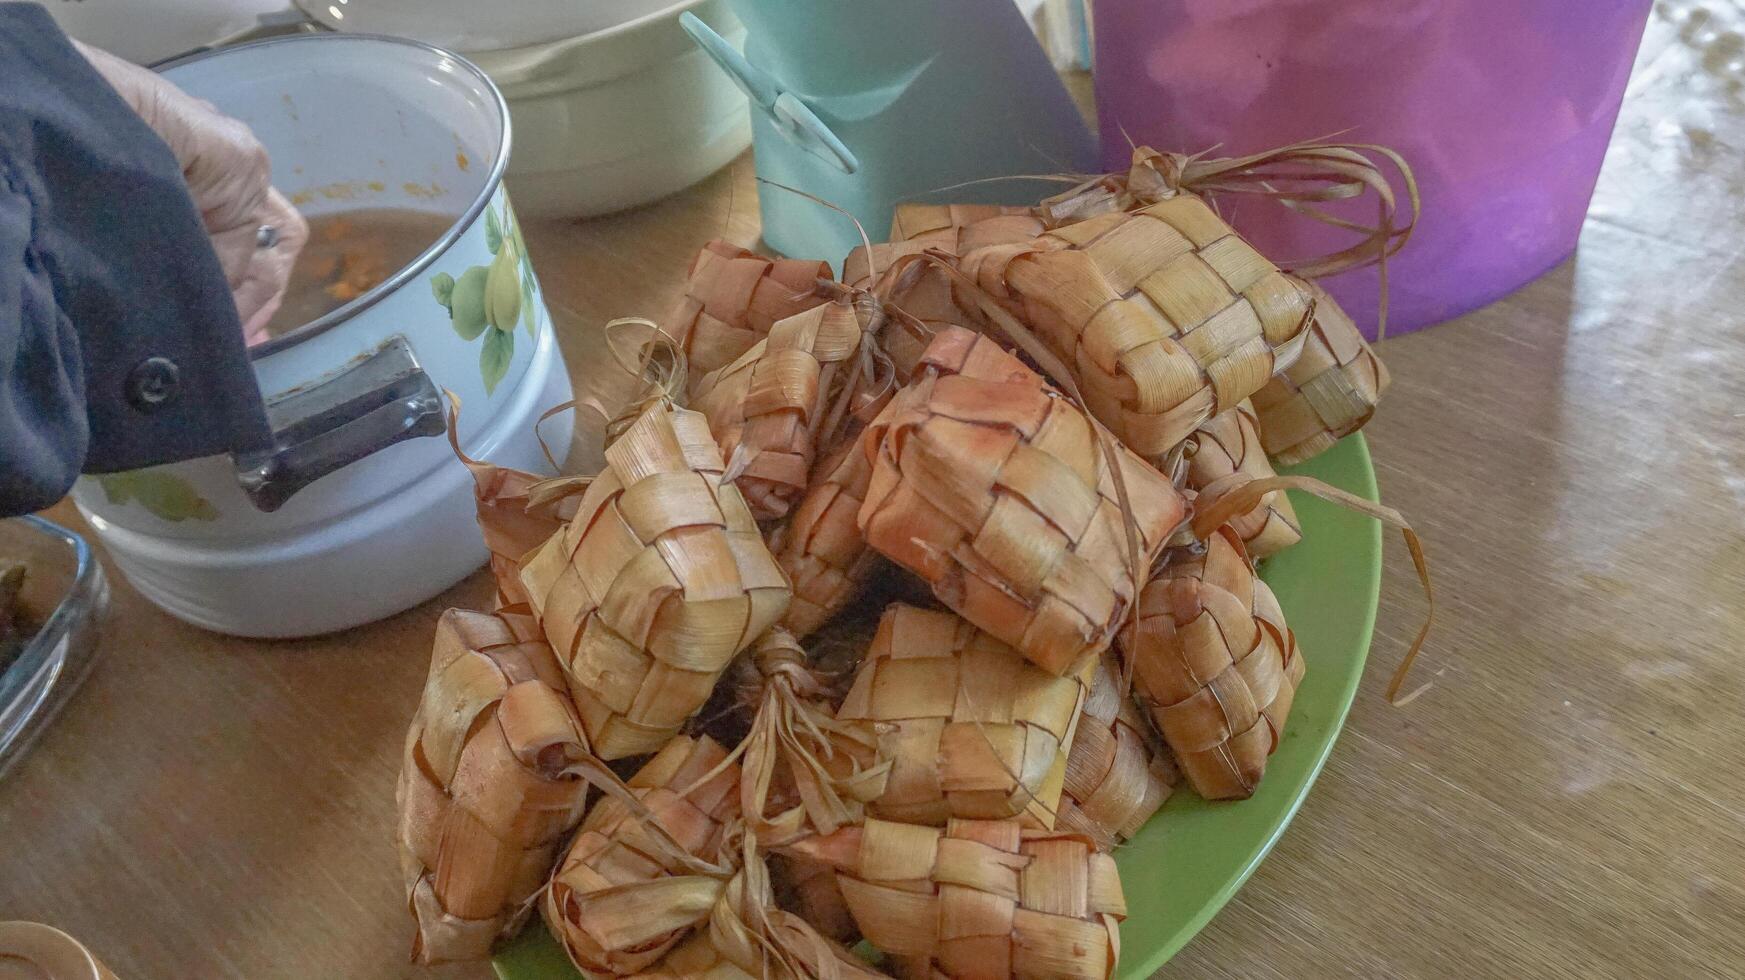 ketupat of rijst- knoedel is Indonesisch traditioneel voedsel dienen Aan eid foto